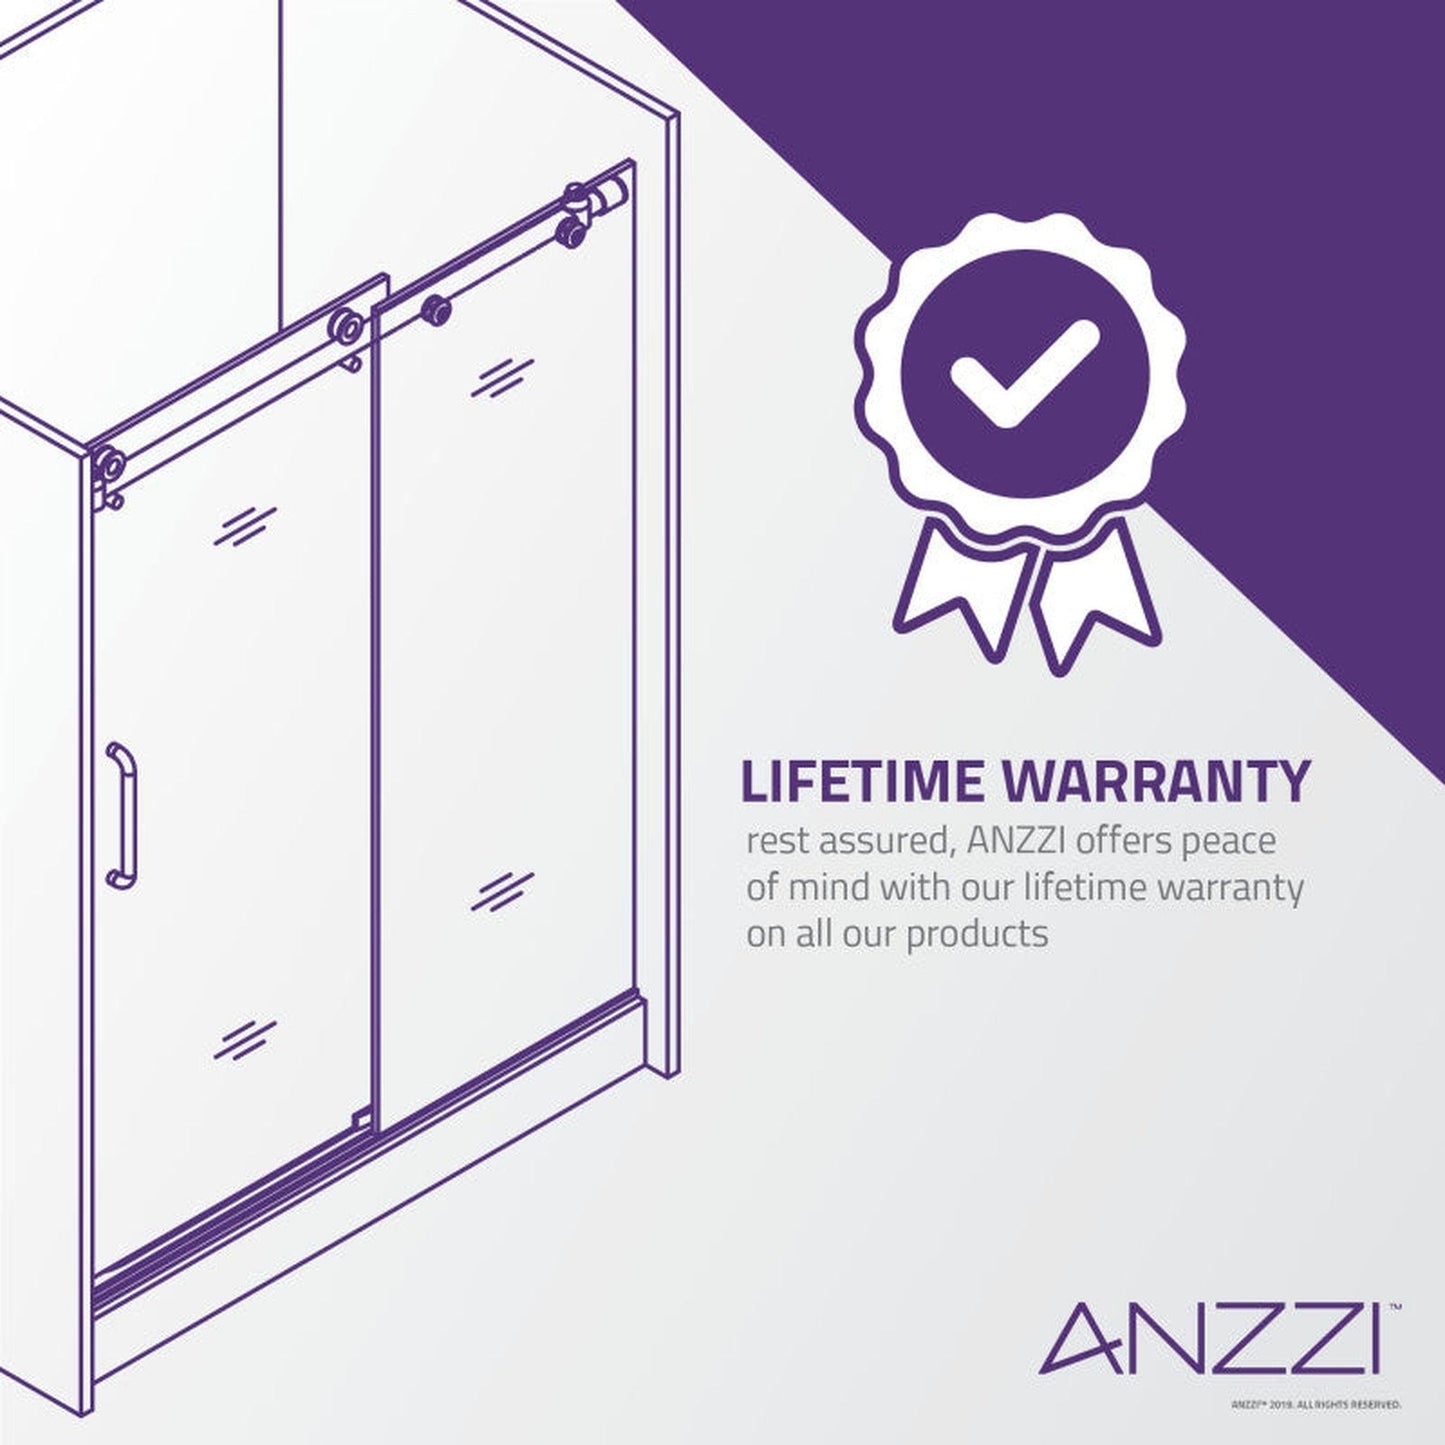 ANZZI Kahn Series 60" x 76" Frameless Rectangular Matte Black Sliding Shower Door With Handle and Tsunami Guard